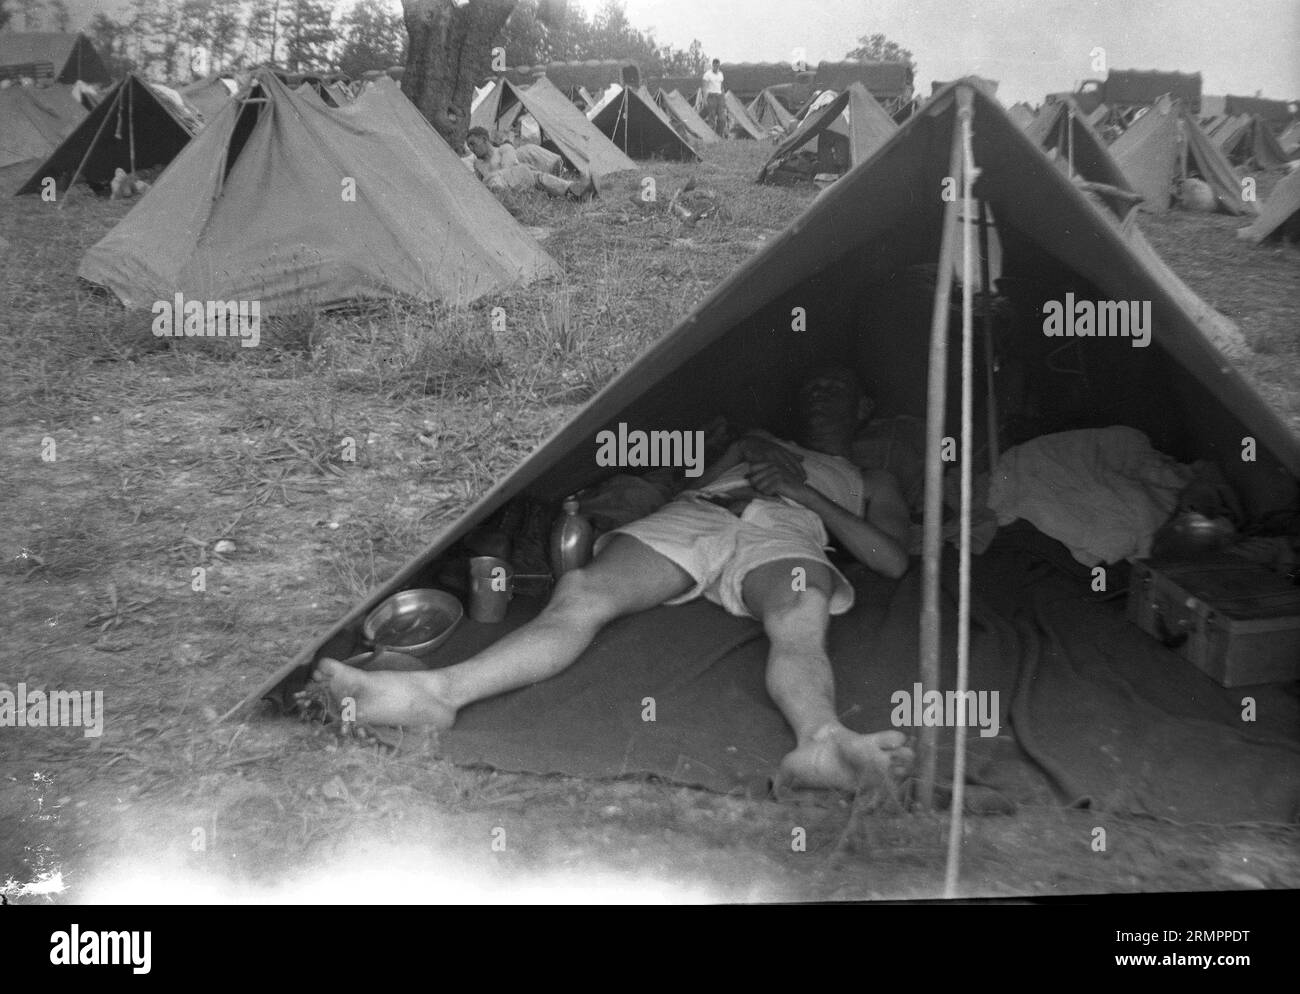 Soldat schläft im Zelt der Armee im Zeltlager. Mitglieder der 114. Infanteriedivision der US-Armee trainieren im Zweiten Weltkrieg gegen Deutschland in Europa. Stockfoto